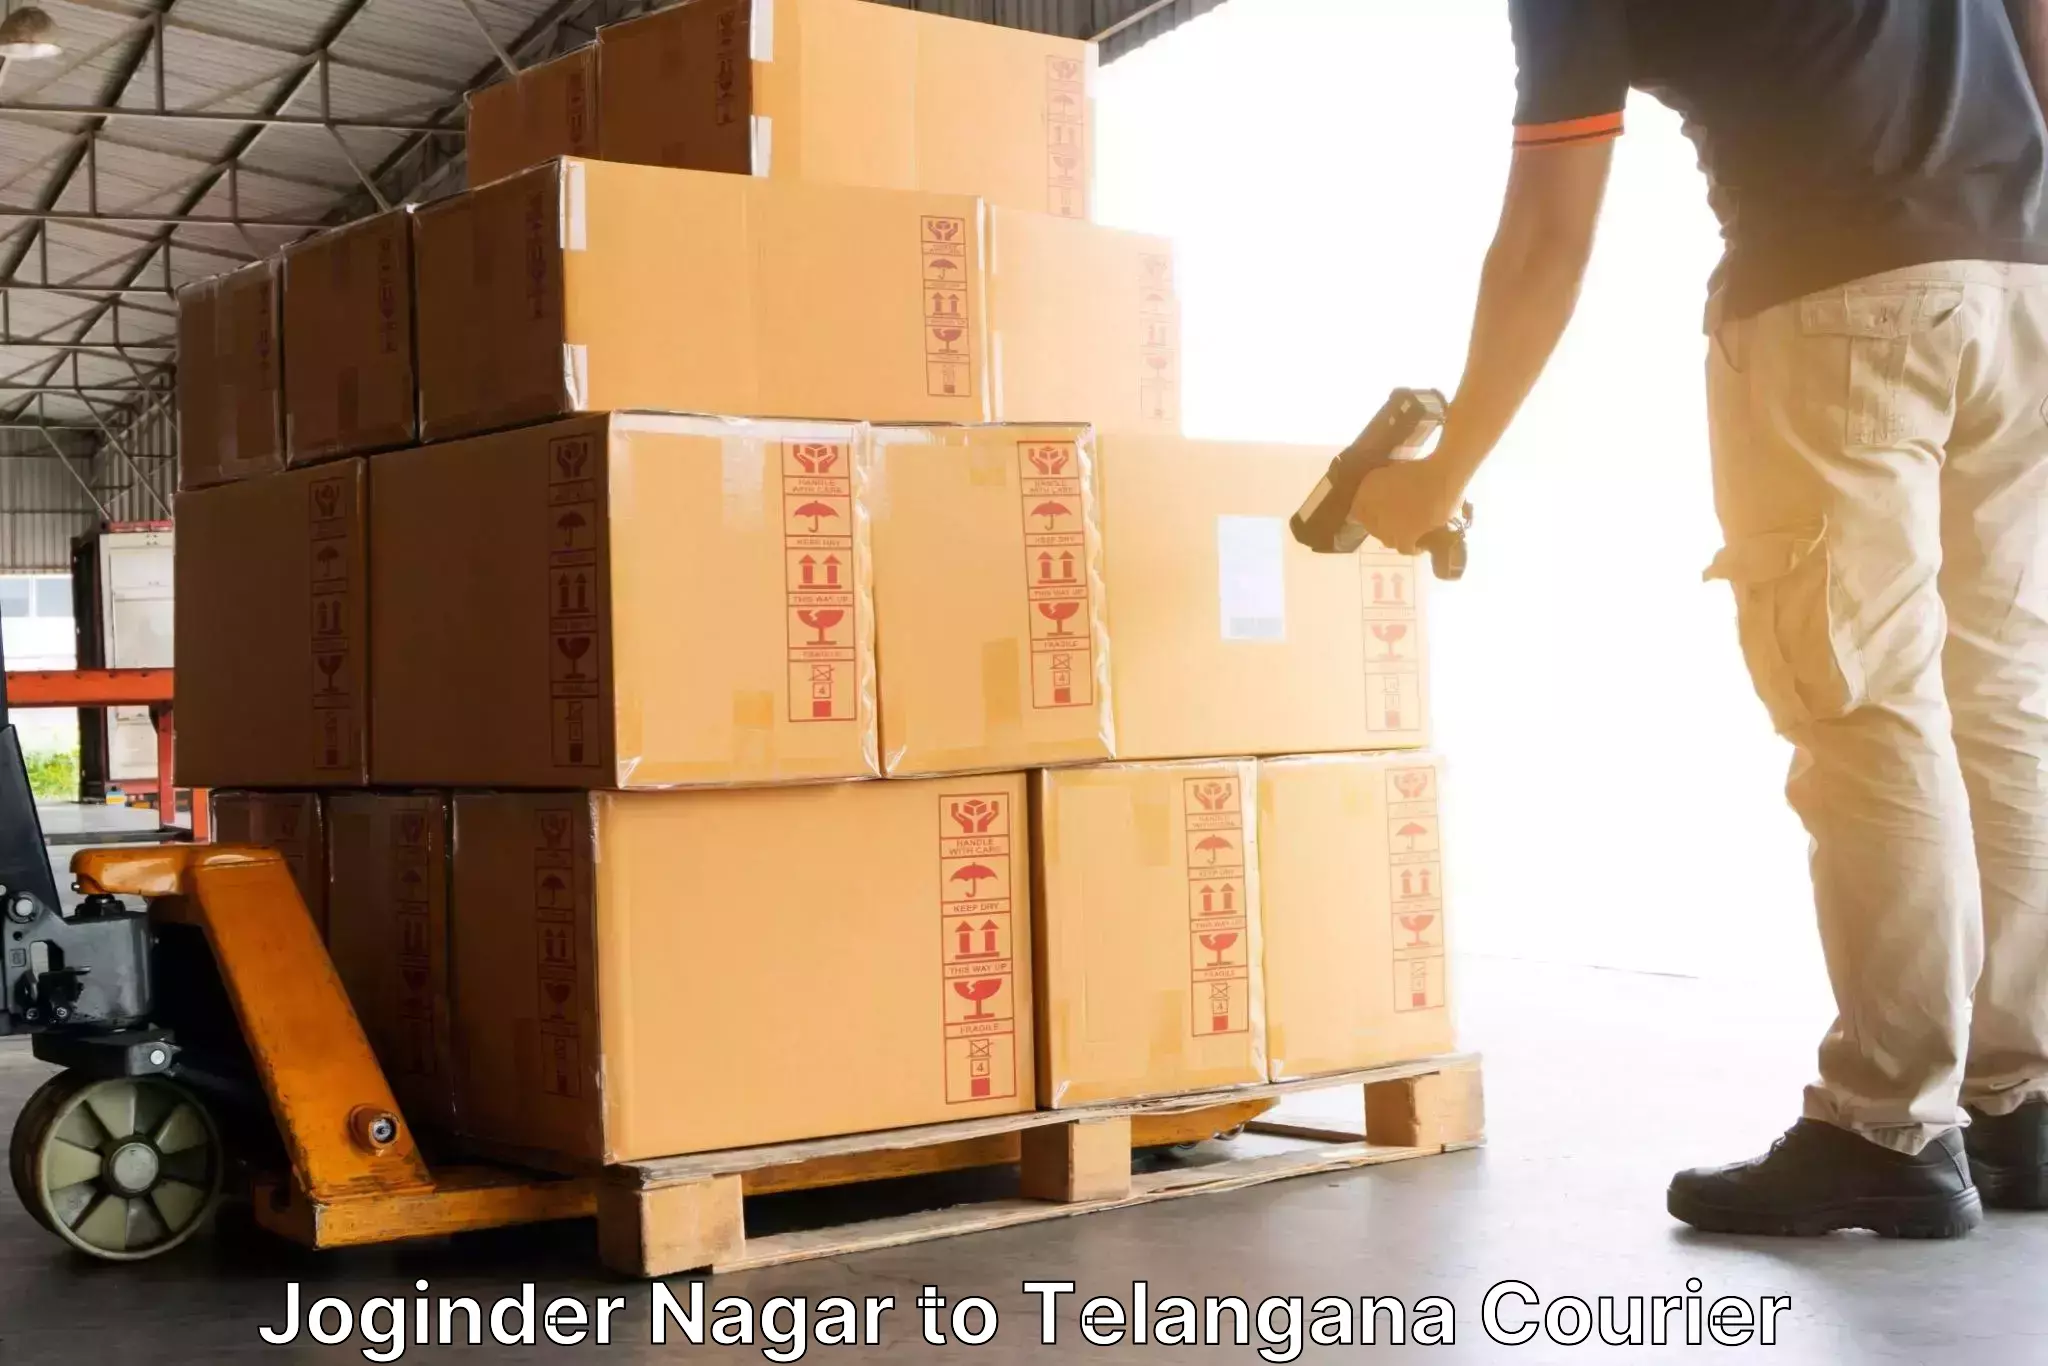 Express package handling Joginder Nagar to Telangana